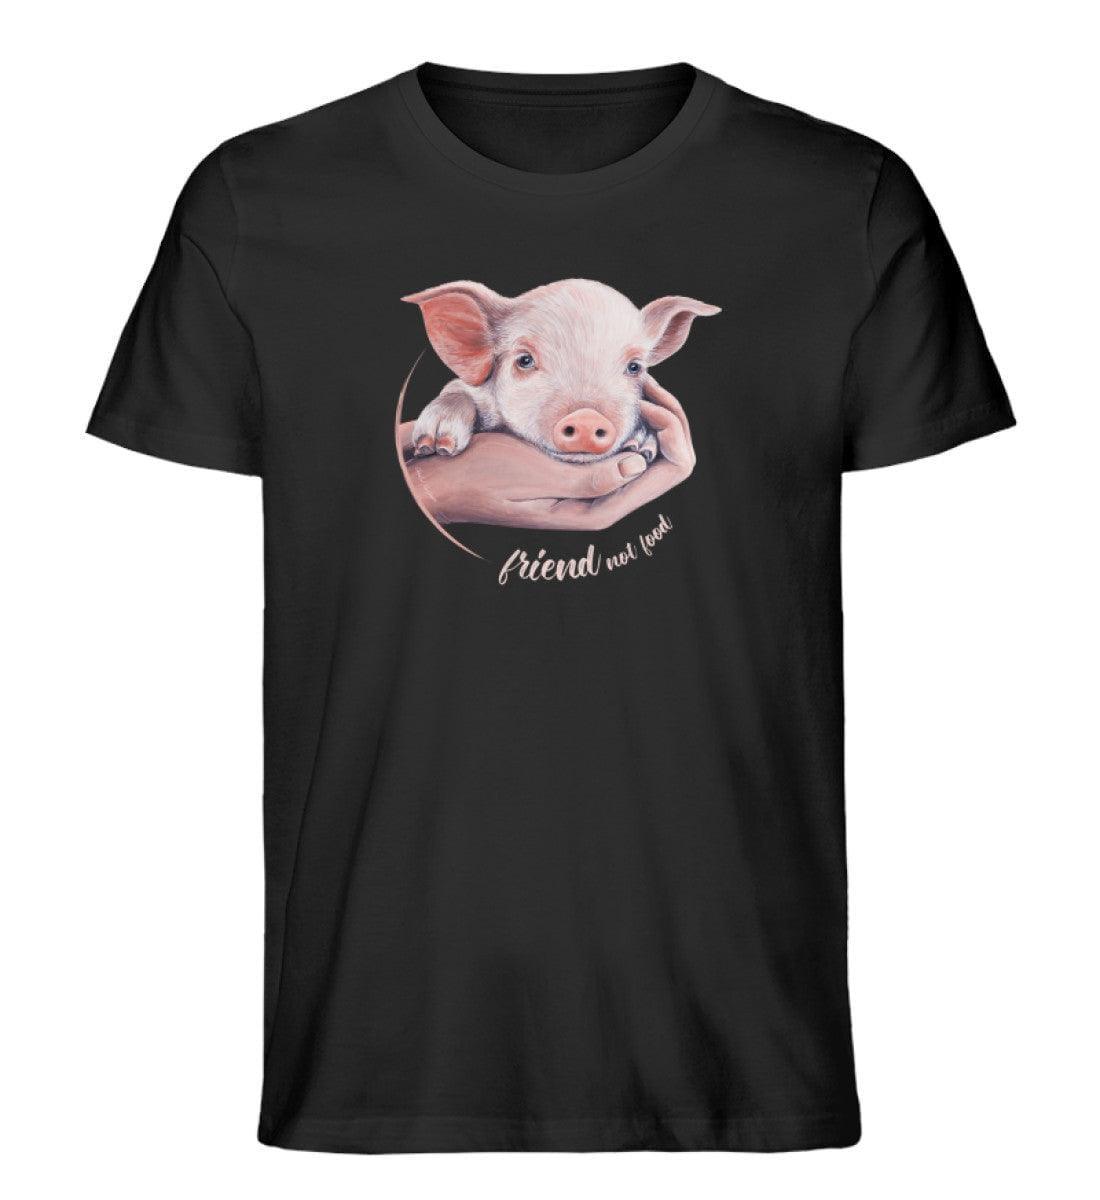 Friend not food Schwein [Chantal Kaufmann] - Unisex Organic Shirt - Team Vegan © vegan t shirt